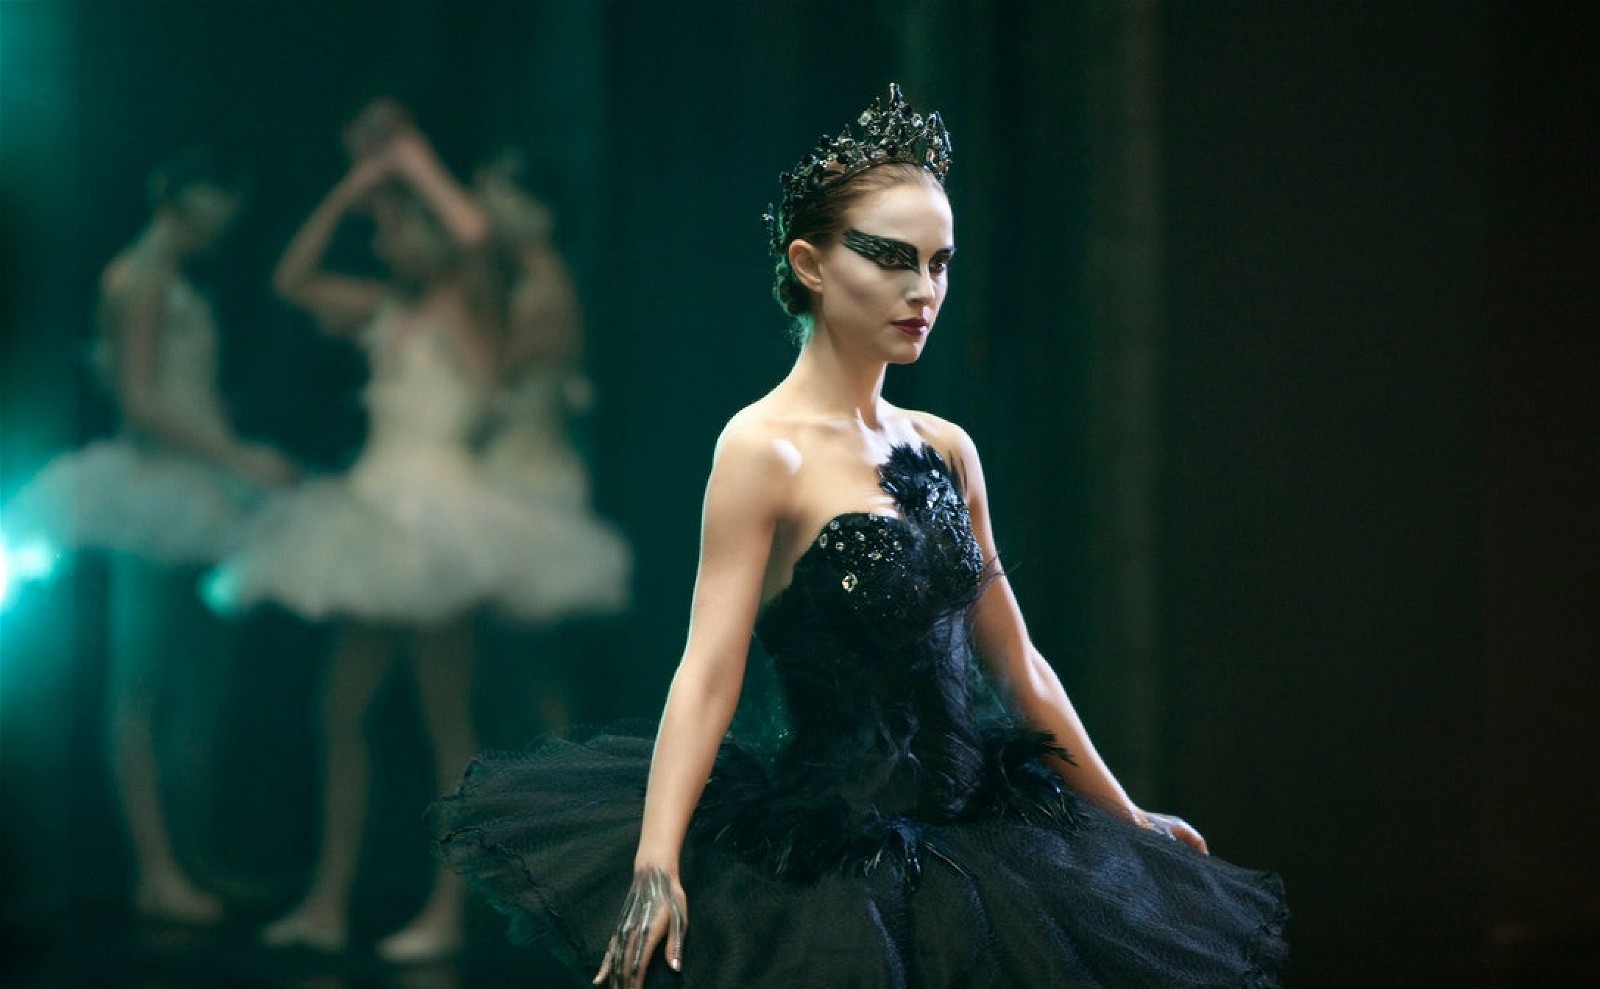 Horror thriller, Black Swan (2010)